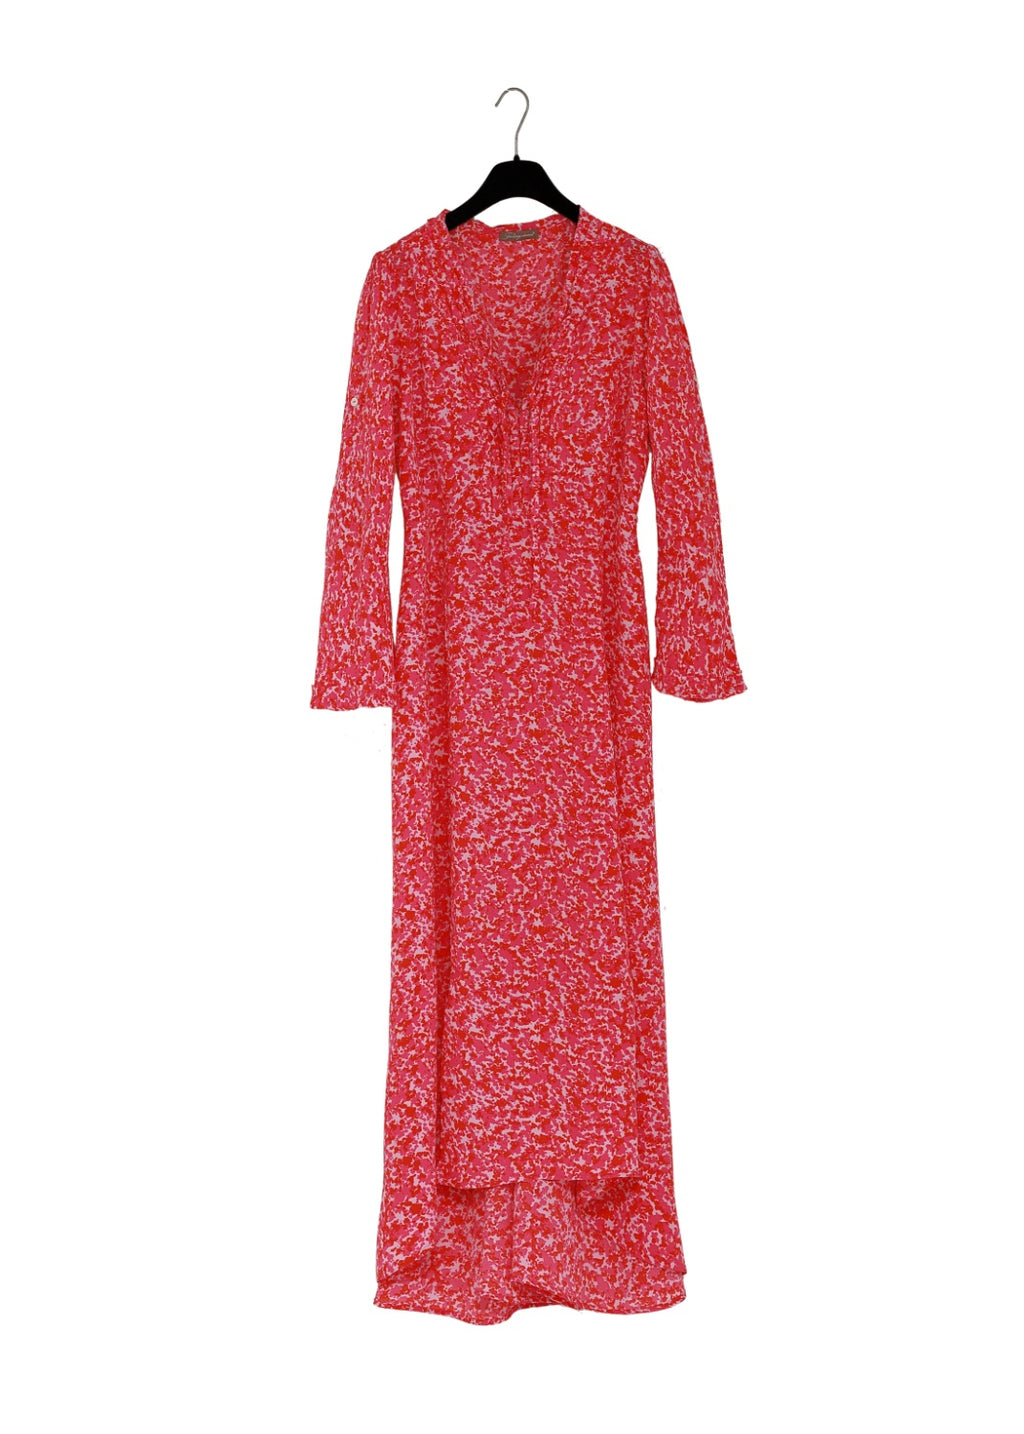 Hallonröd maxilång klänning, enkel och sofistikerad i lyxig viskos crêpe en tidlös 70-tals inspirerad look.